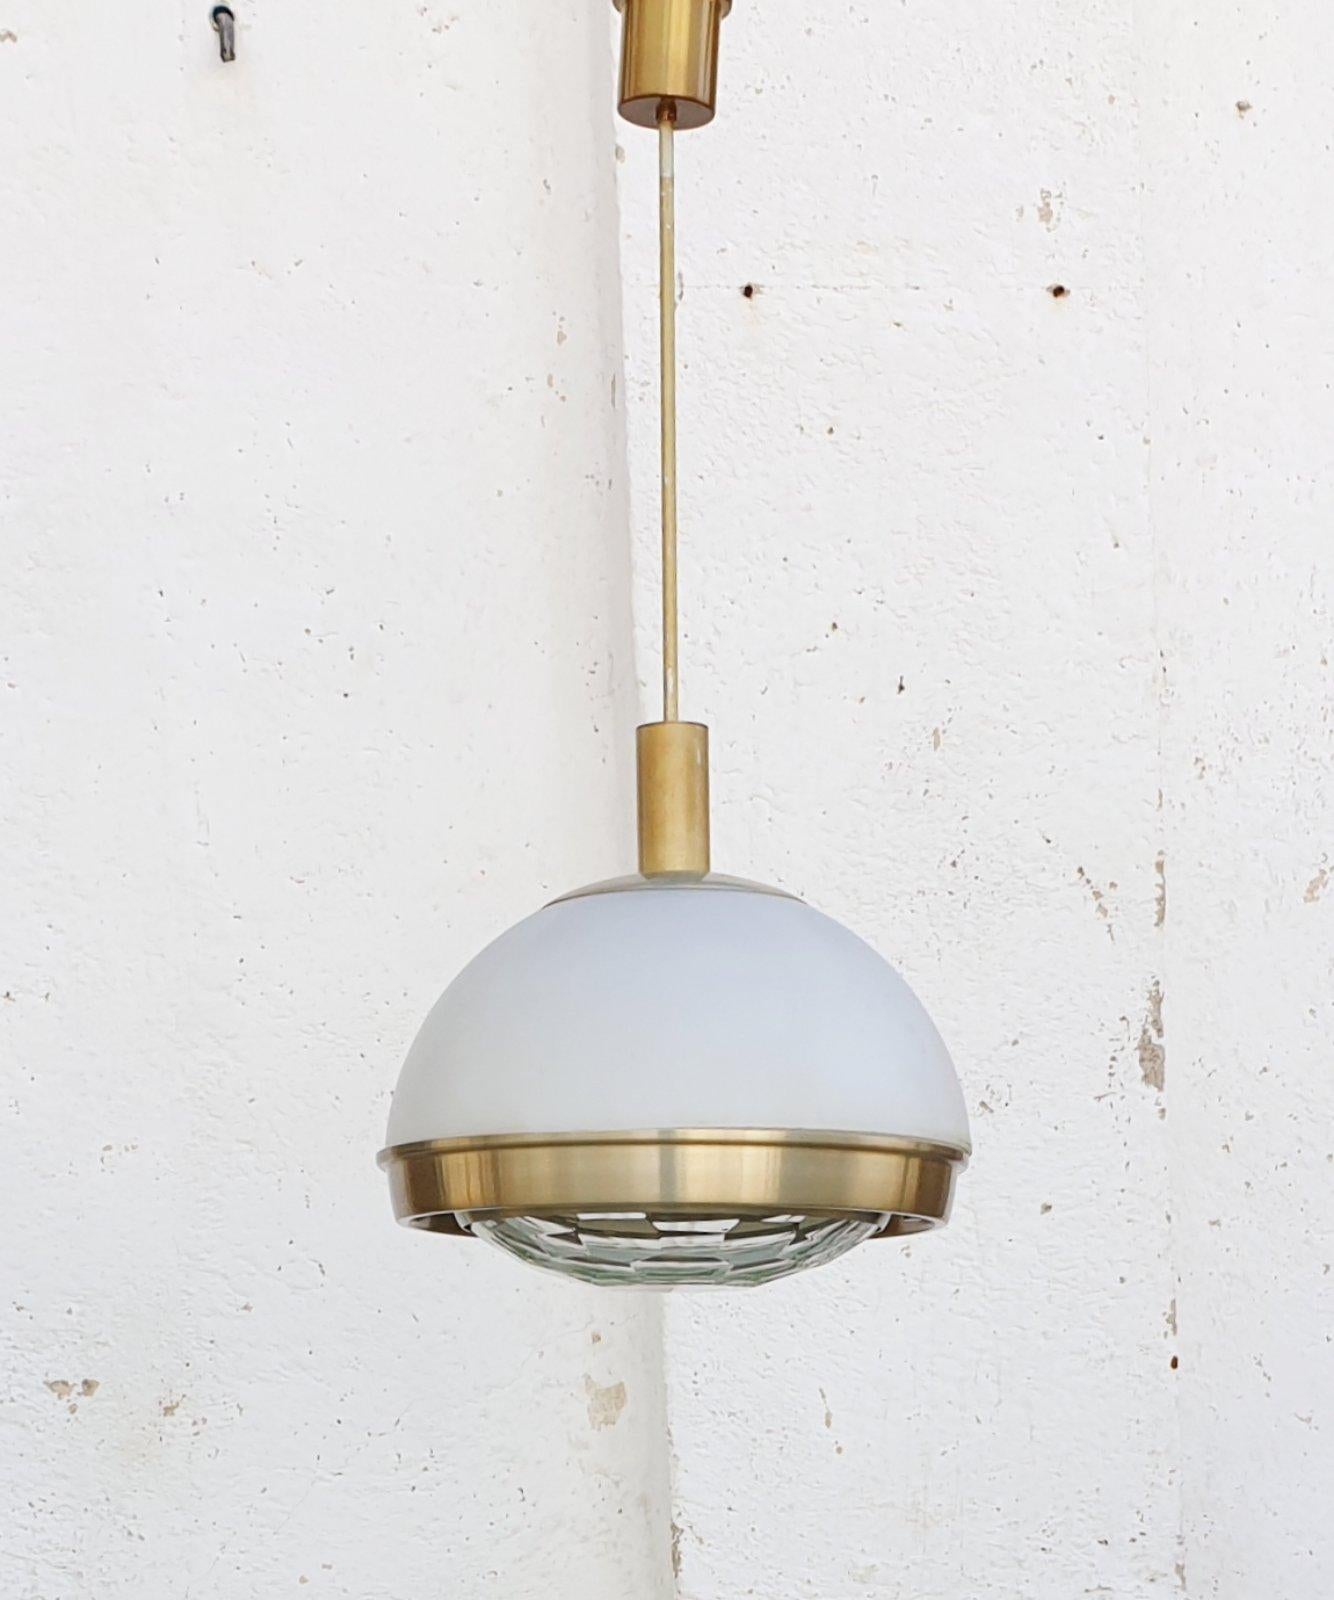 Italian Modern Pendant Lamp by Pia Giudetti Crippa for Lumi, Italy 60s For Sale 1